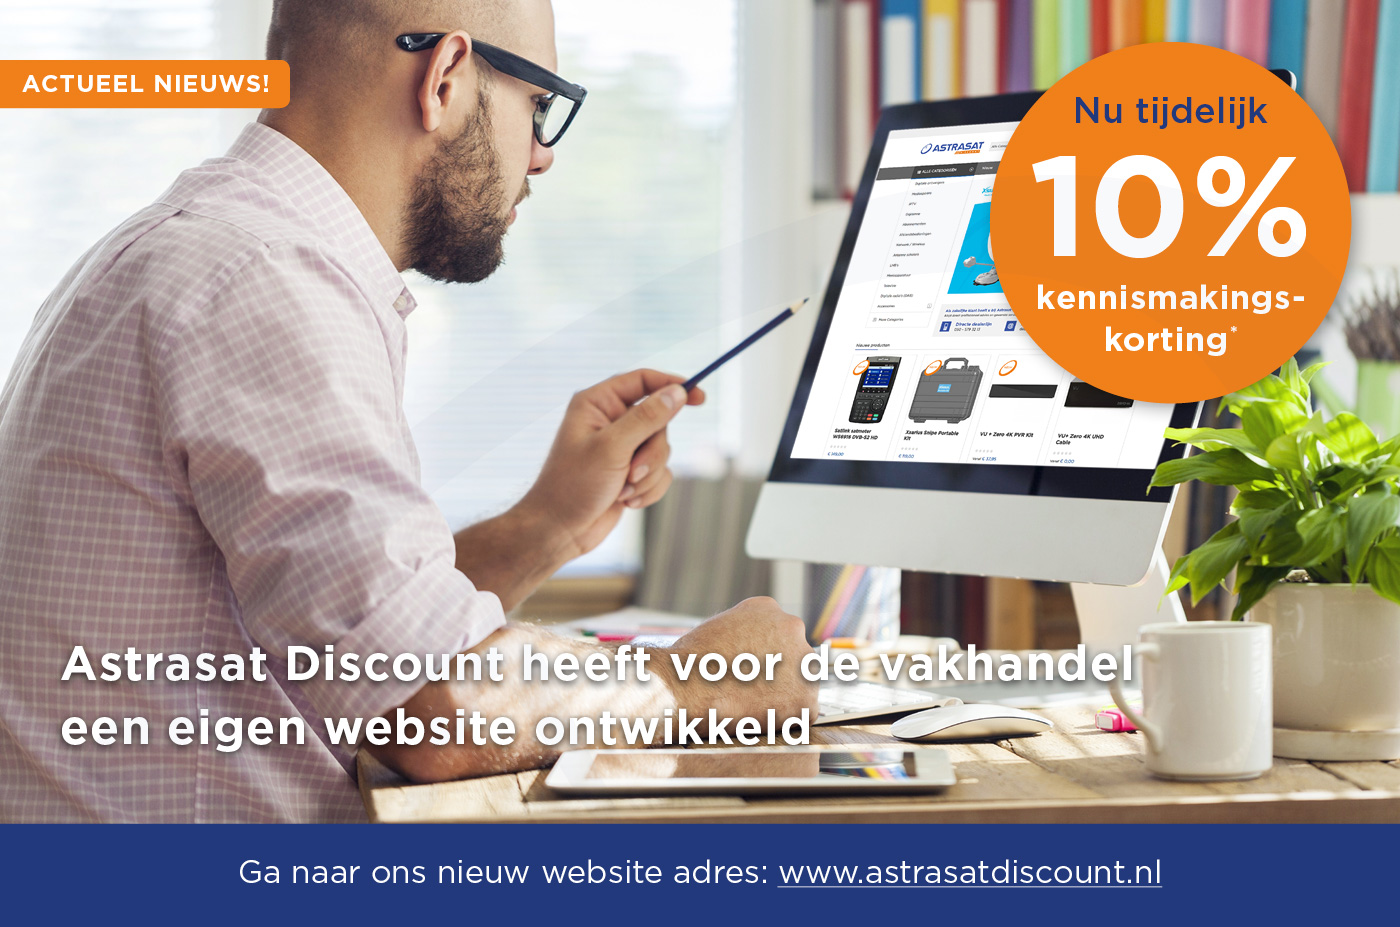 Astrasat Discount heeft voor de vakhandel een eigen website ontwikkeld www.astrasatdiscount.nl